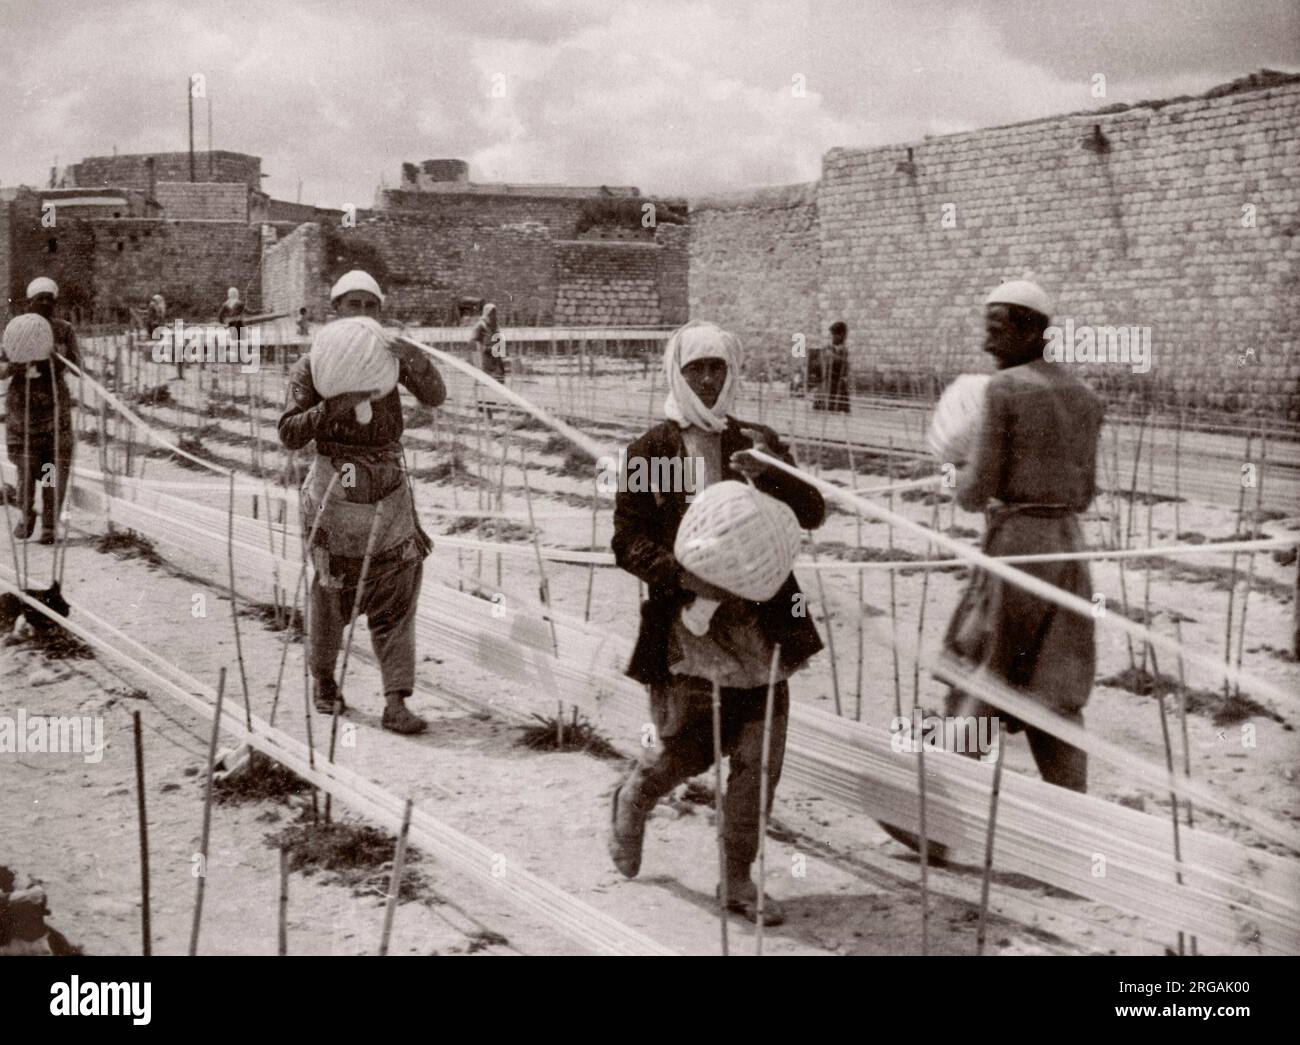 1943 Moyen-Orient Syrie - scène à Alep - balles de coton tortueuses Photographie d'un officier de recrutement de l'armée britannique stationné en Afrique de l'est et au Moyen-Orient pendant la Seconde Guerre mondiale Banque D'Images